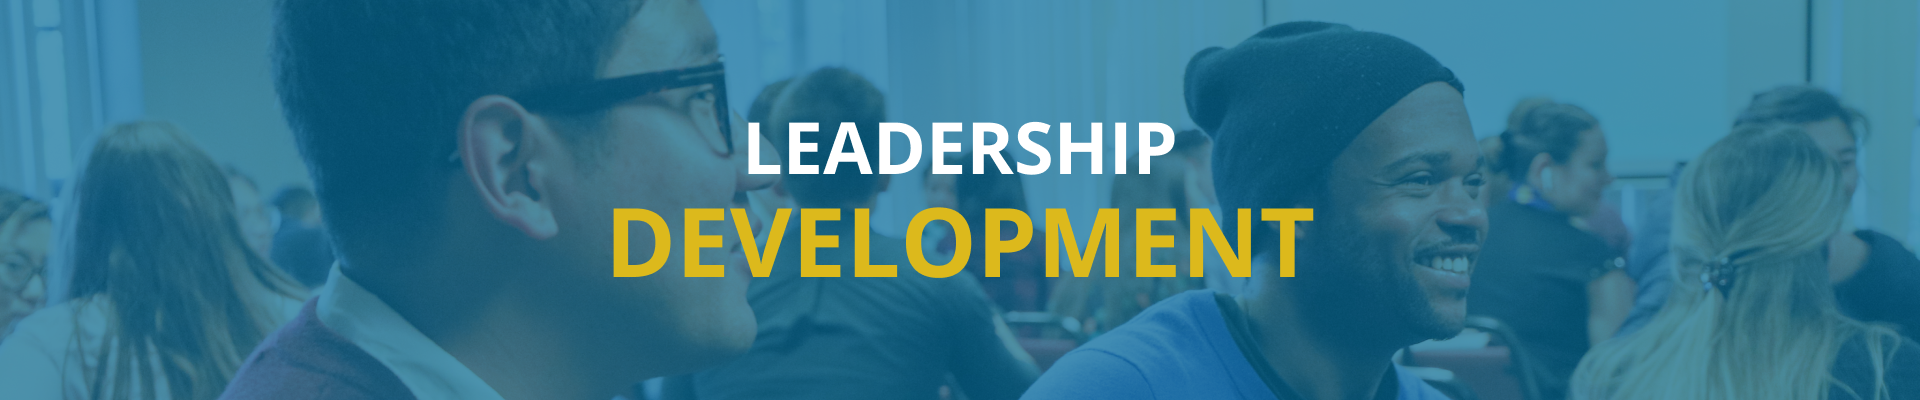 Leadership Development Banner